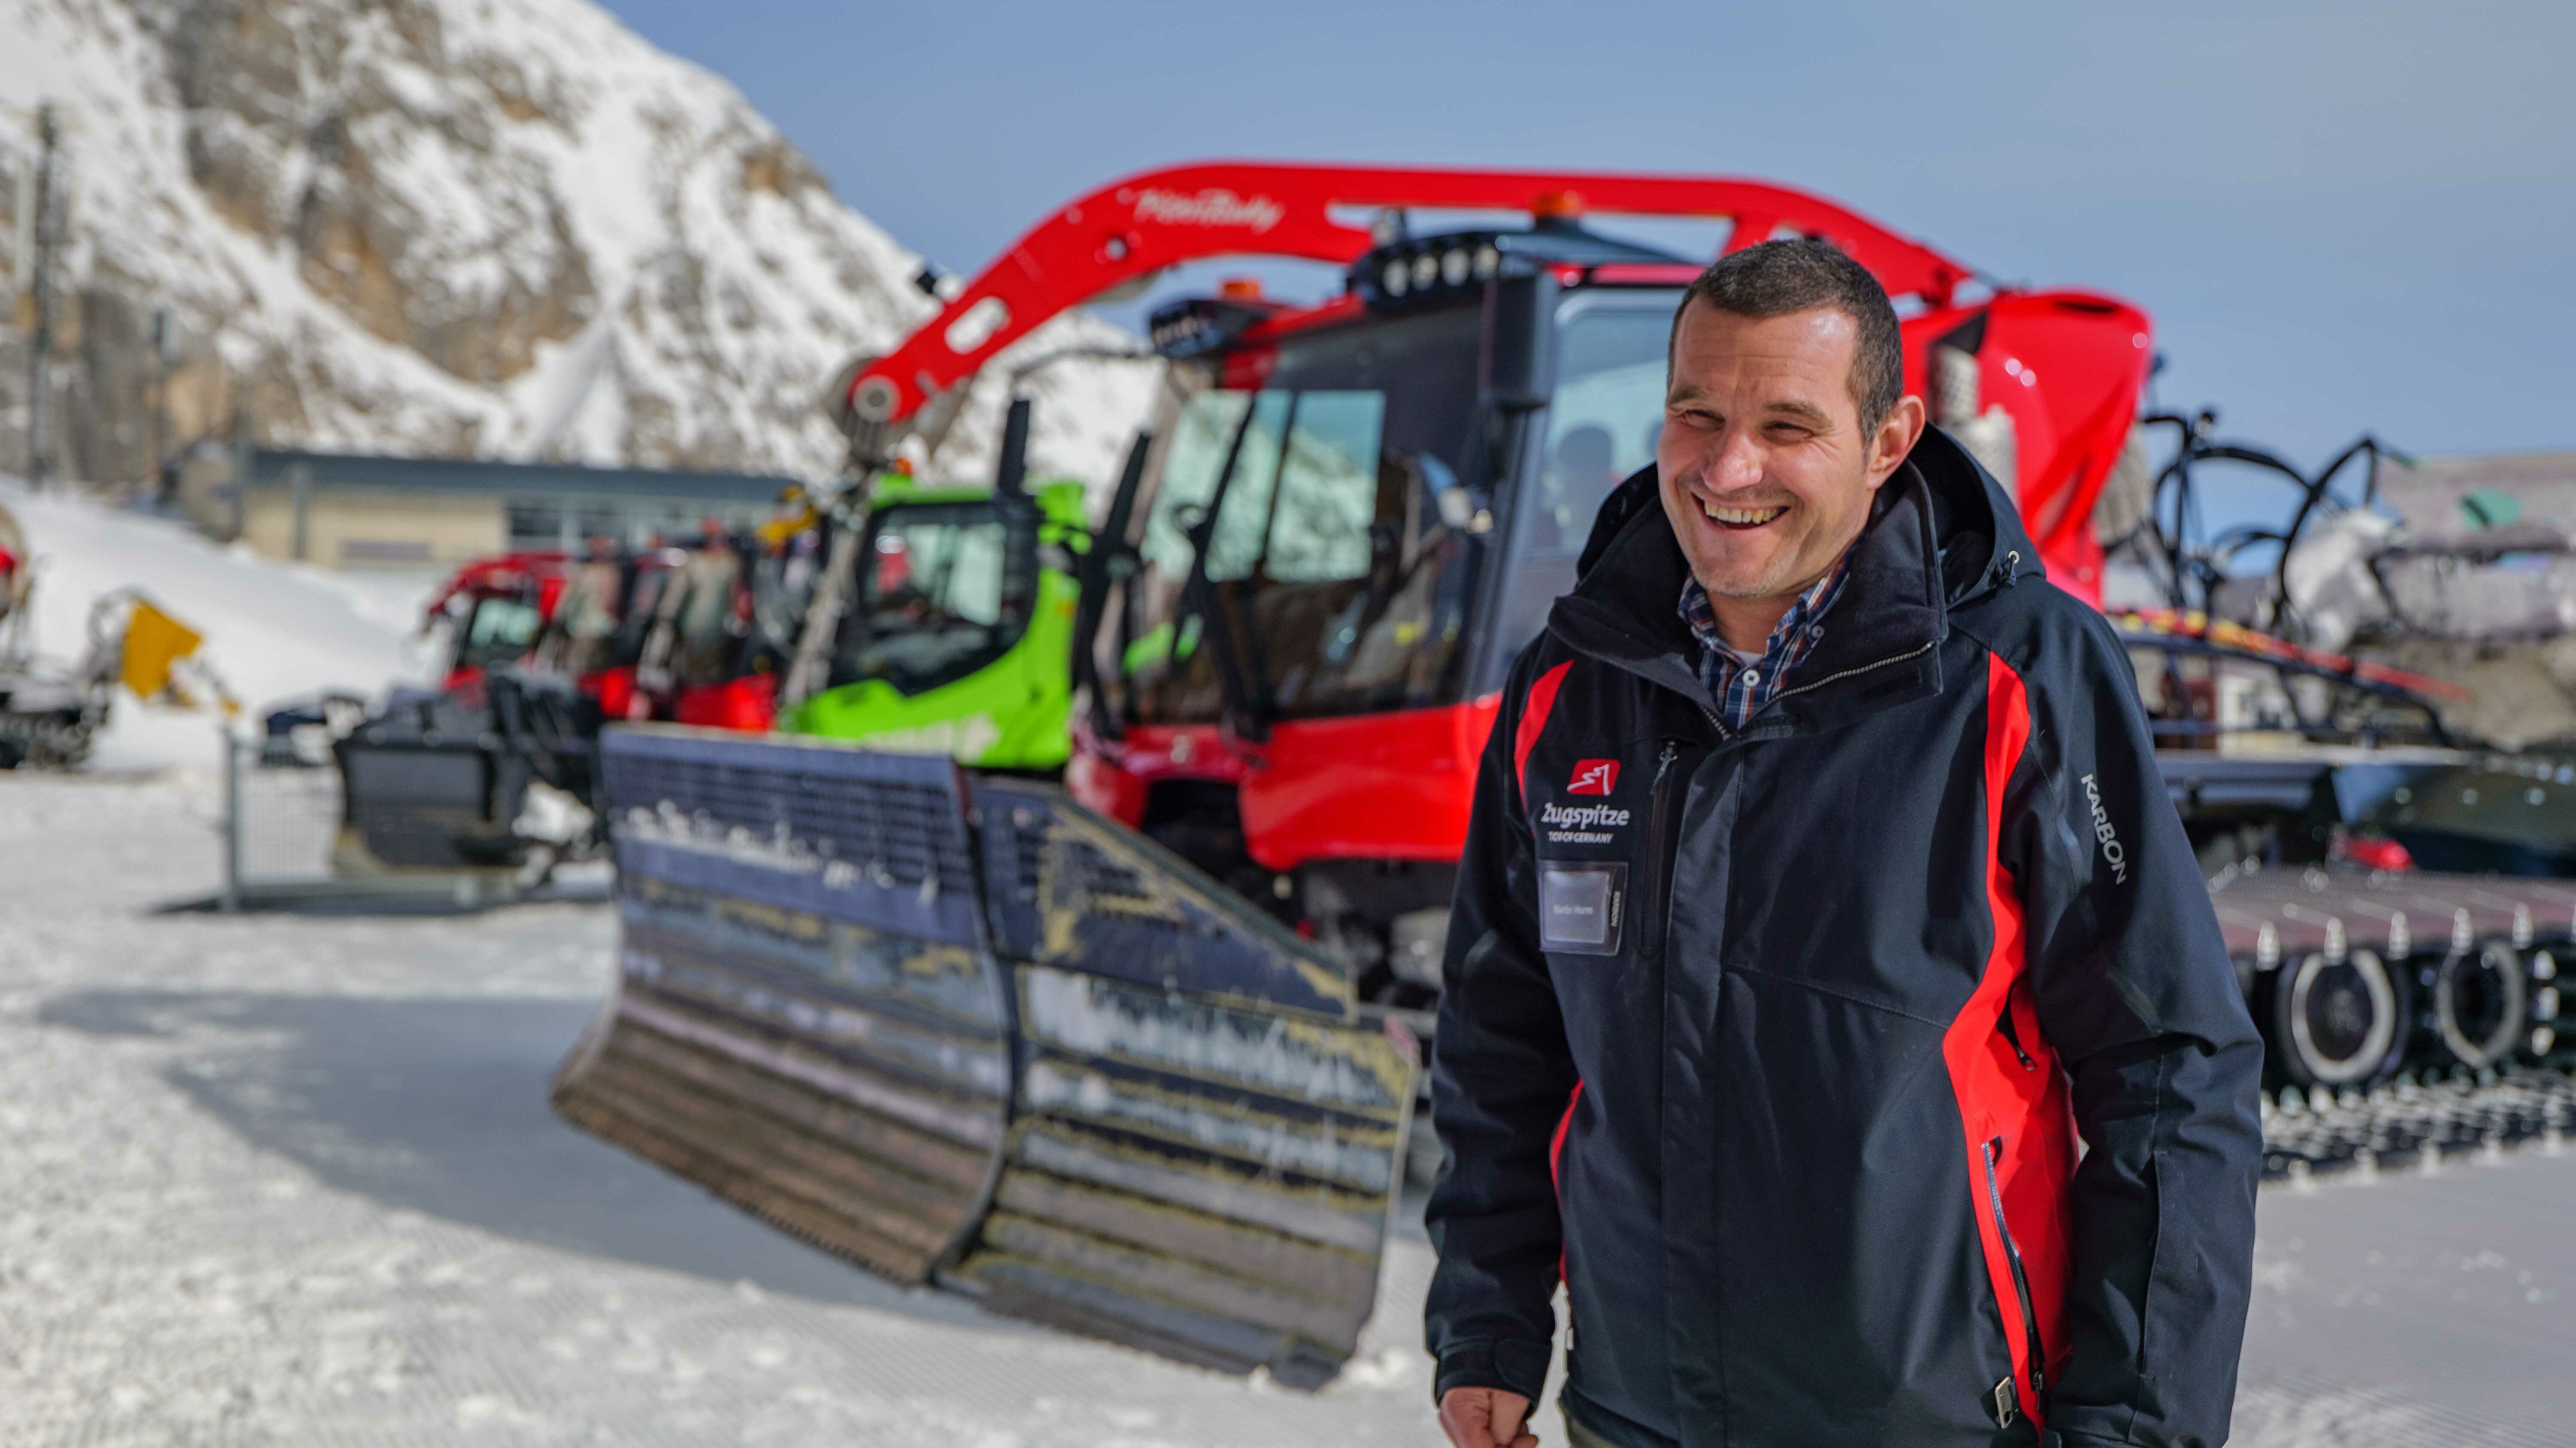 Martin Hurm, chef d'exploitation de la Bayerischen Zugspitzbahn Bergbahn AG, est déjà entièrement convaincu de la solution SNOWsat